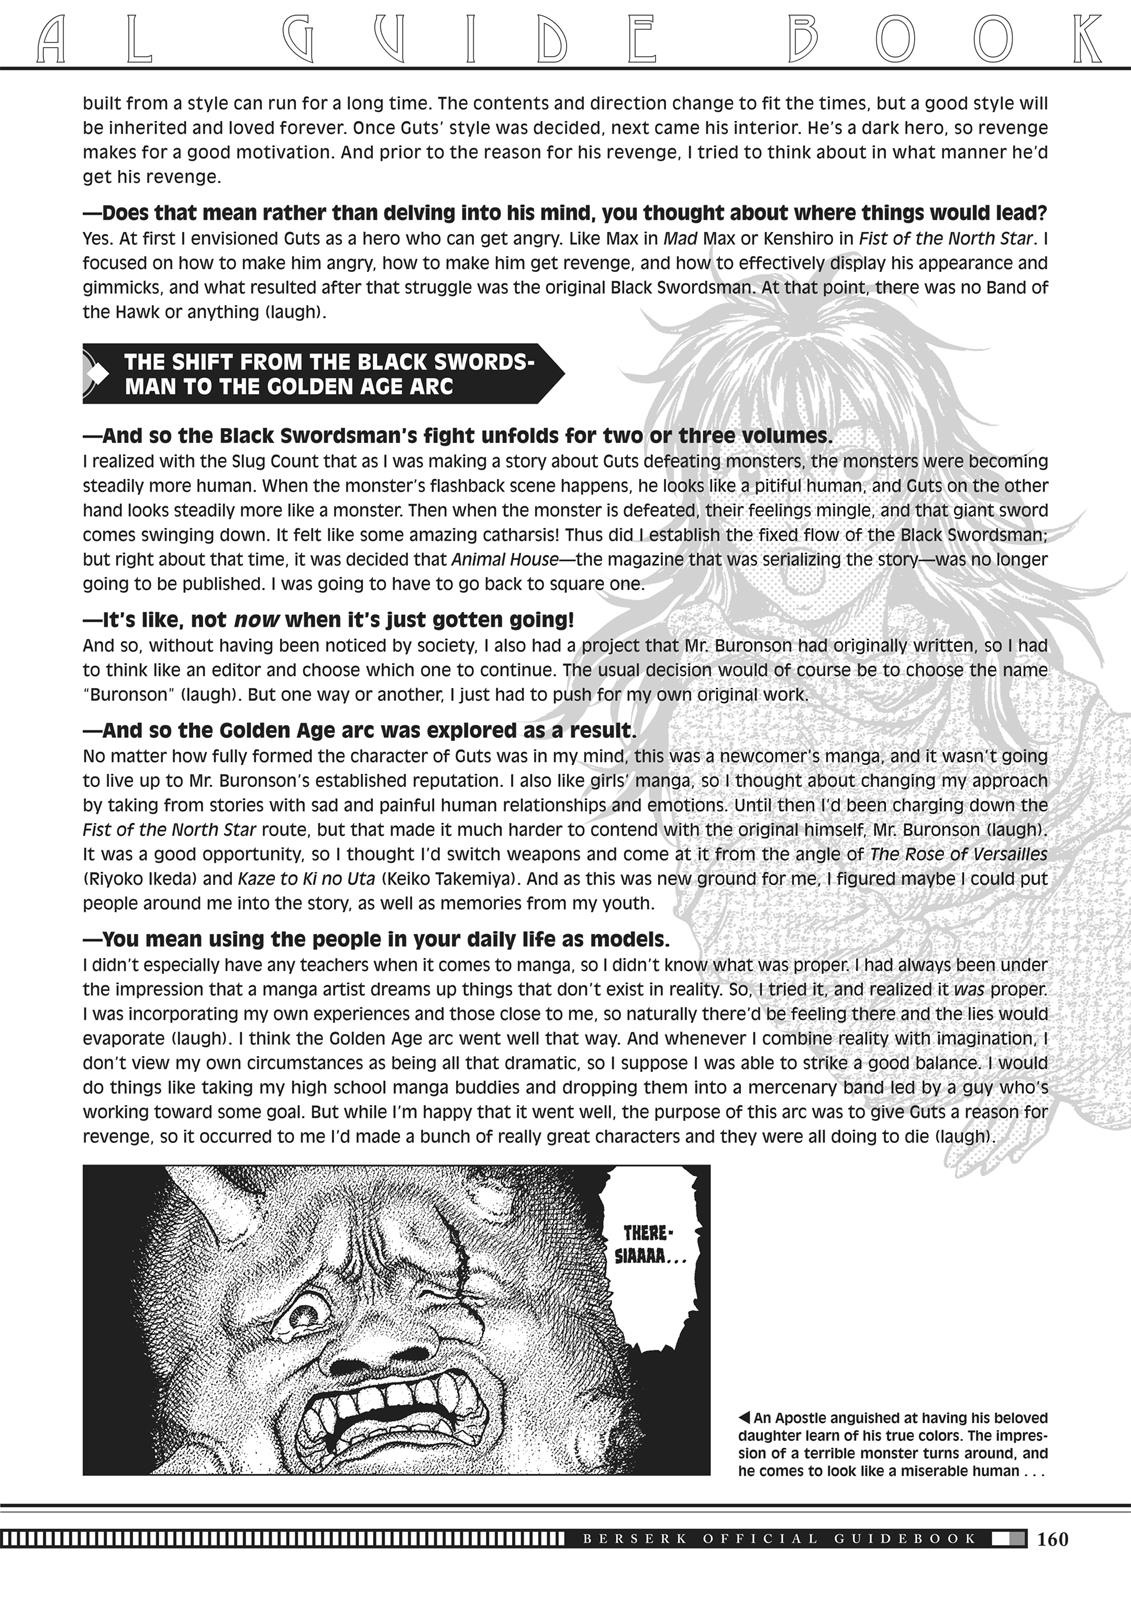 Berserk Manga Chapter 350.5 image 157